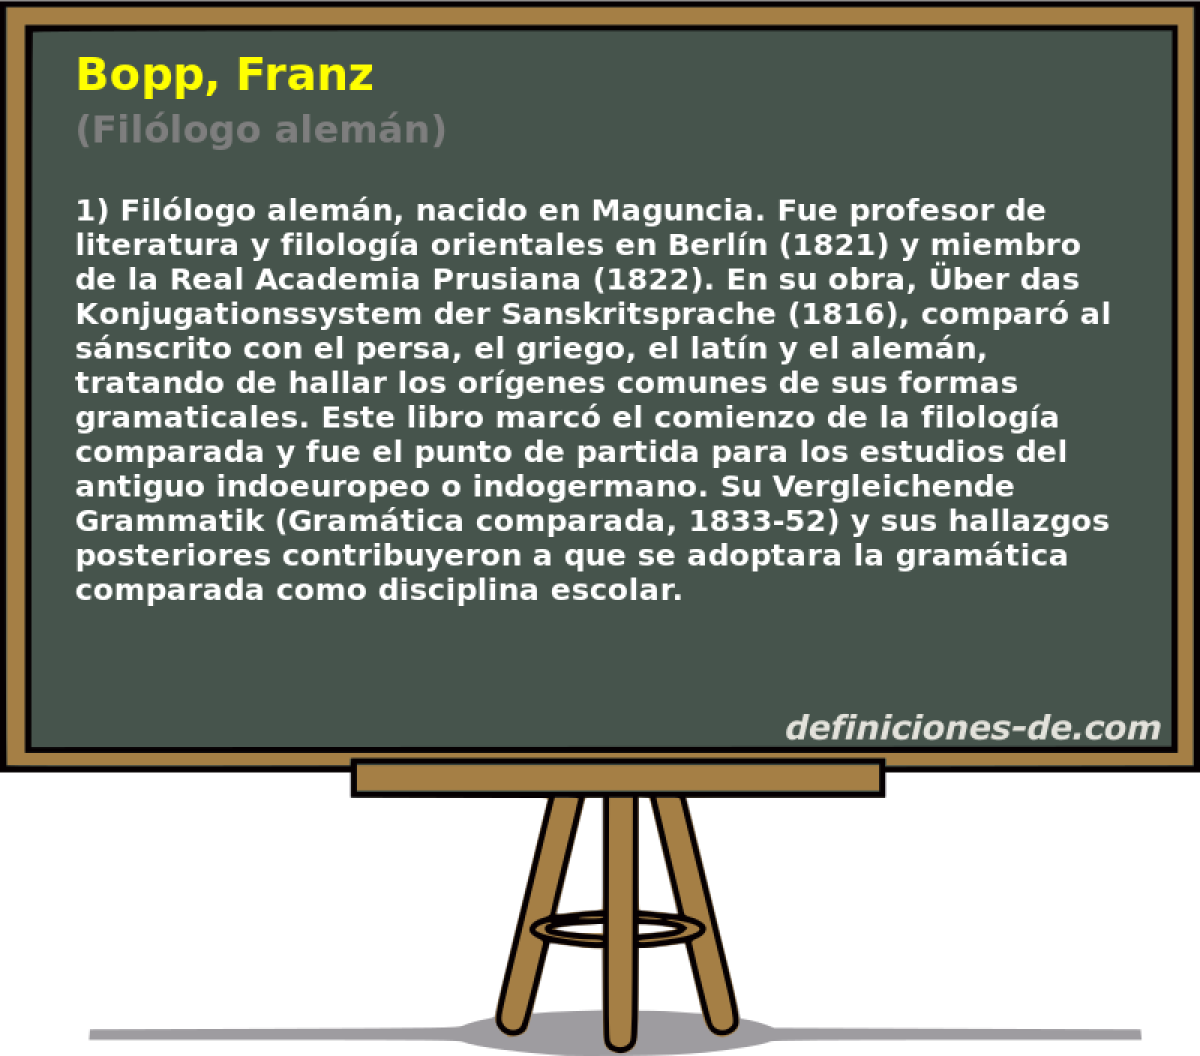 Bopp, Franz (Fillogo alemn)